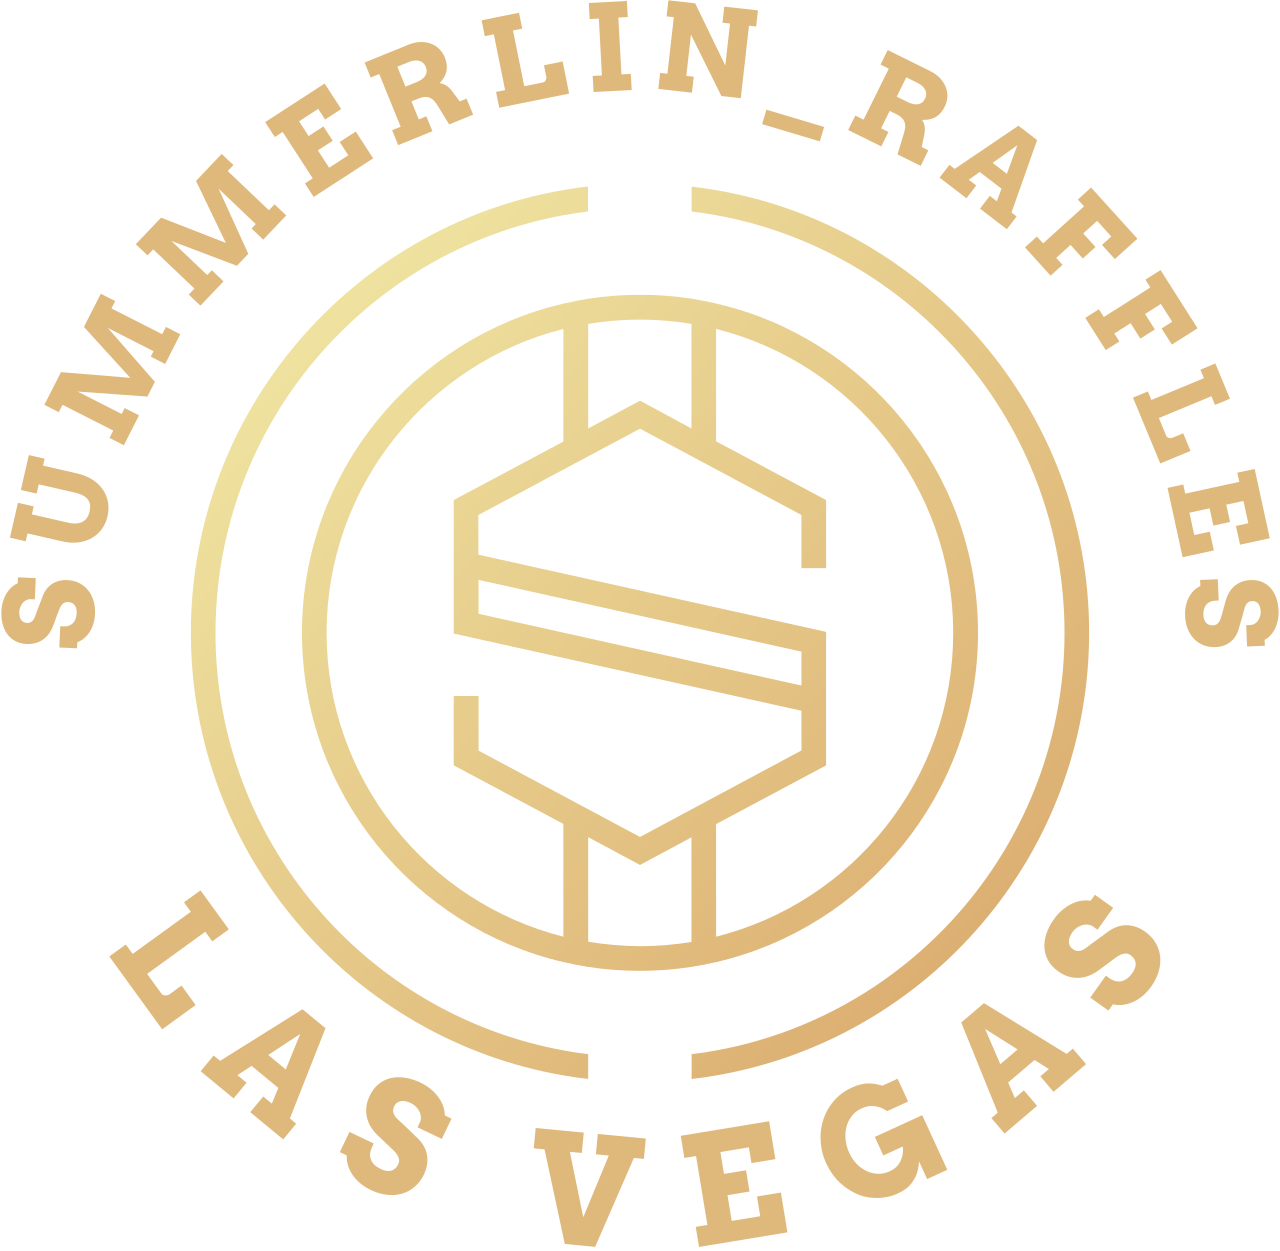 SUMMERLIN_RAFFLES's logo